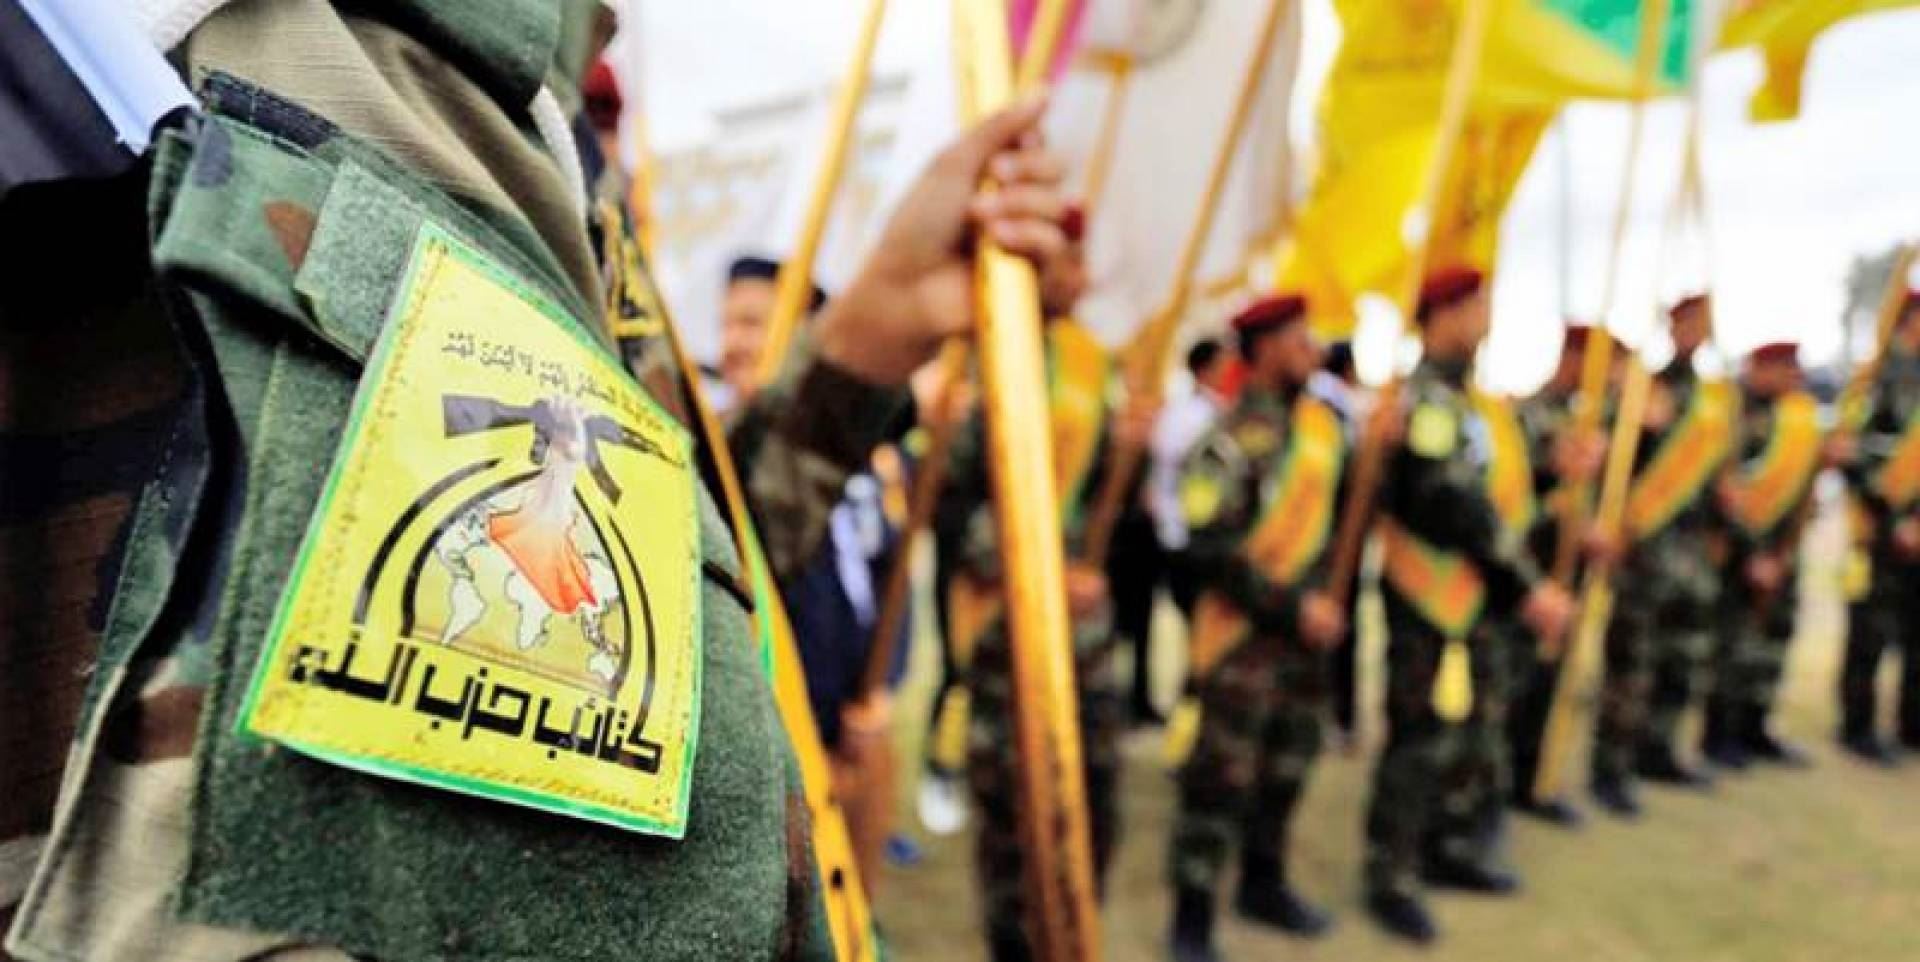 بعد الخسارة في الانتخابات... تحالف الفتح يندّد وكتائب حزب الله العراقي تصفها بـ"اكبر عملية احتيال" وتدعو "للمقاومة"